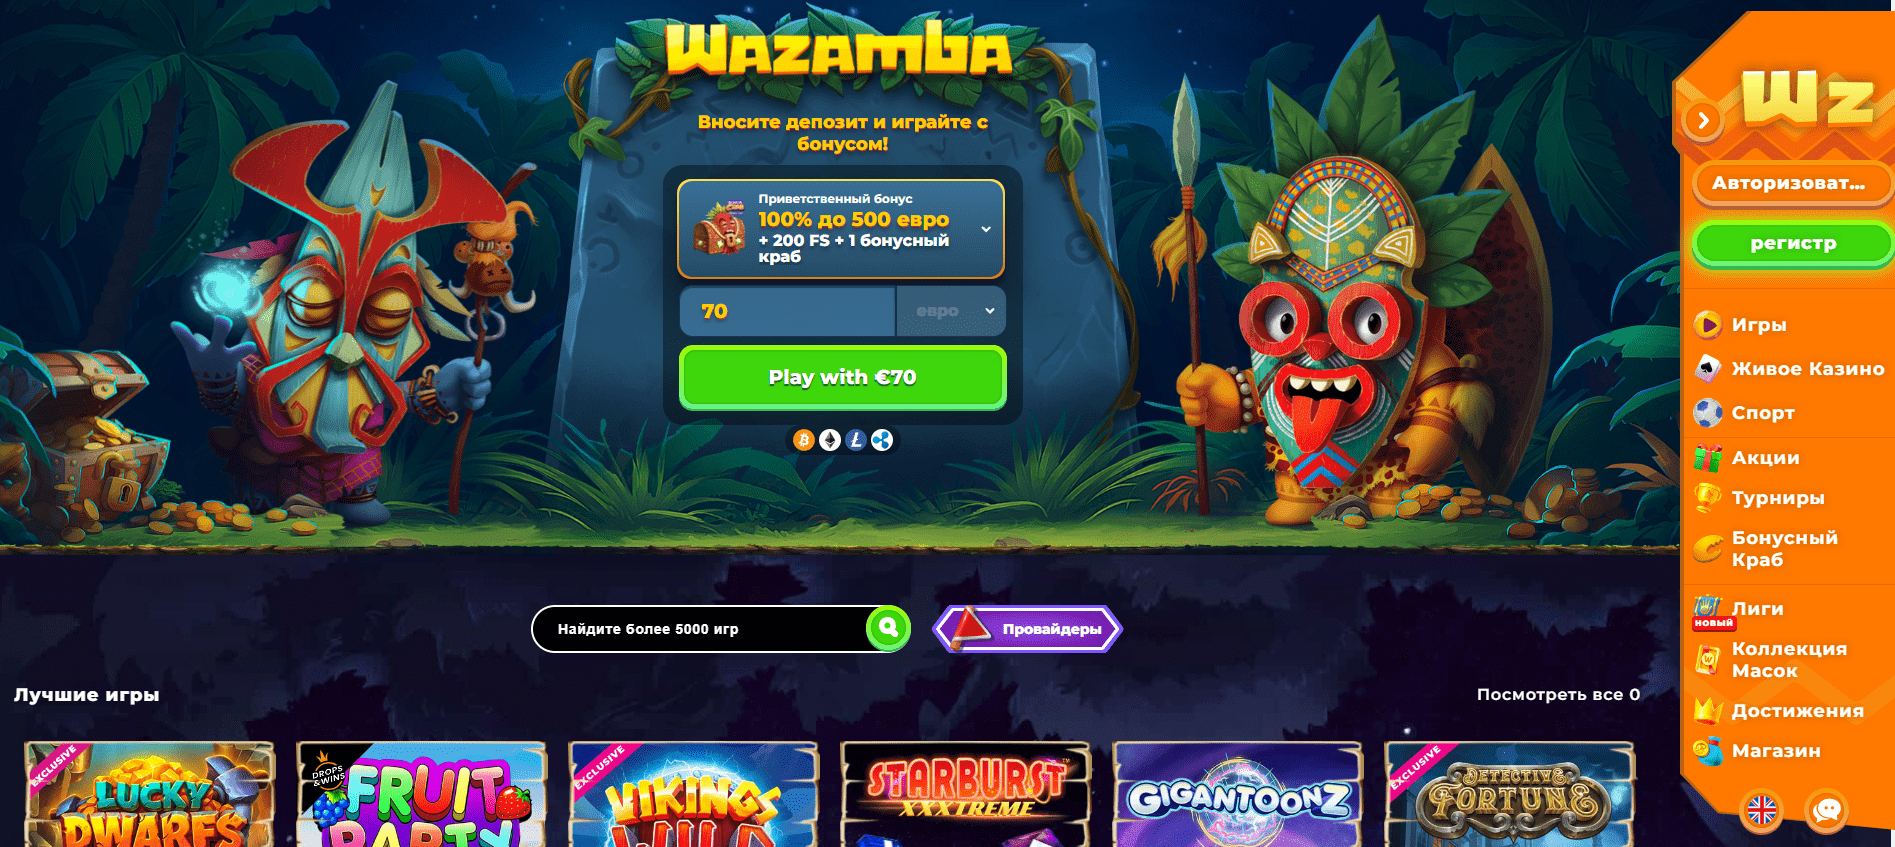 Официальный сайт казино Wazamba 